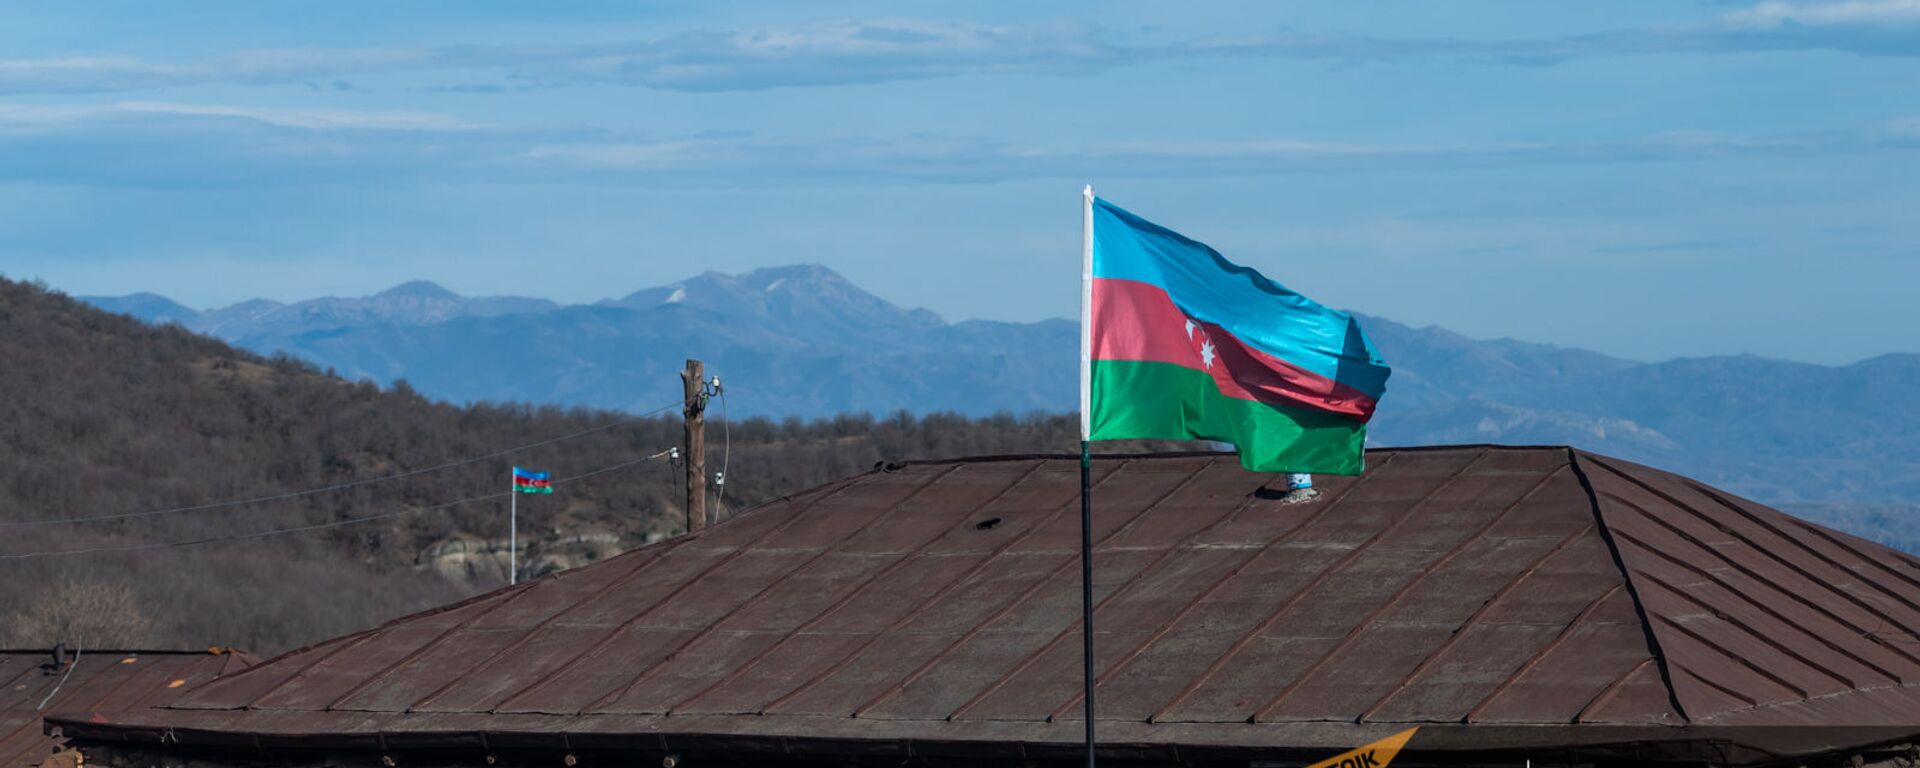 Азербайджанские флаги в селе Шурнух Сюникской области - Sputnik Армения, 1920, 25.05.2021